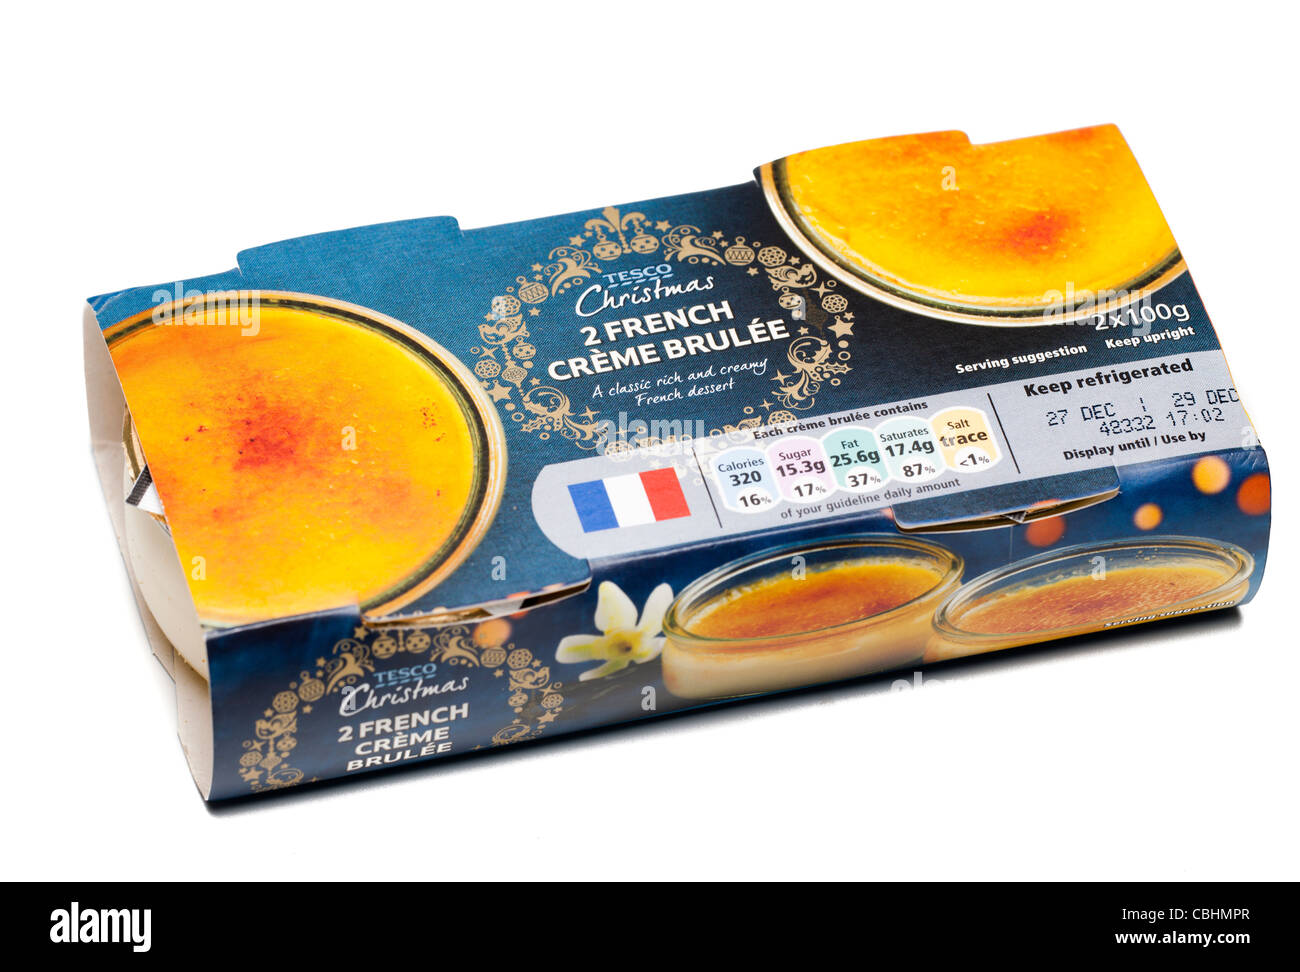 Deux pack de Tesco en date du Noël Français crème brûlée Banque D'Images